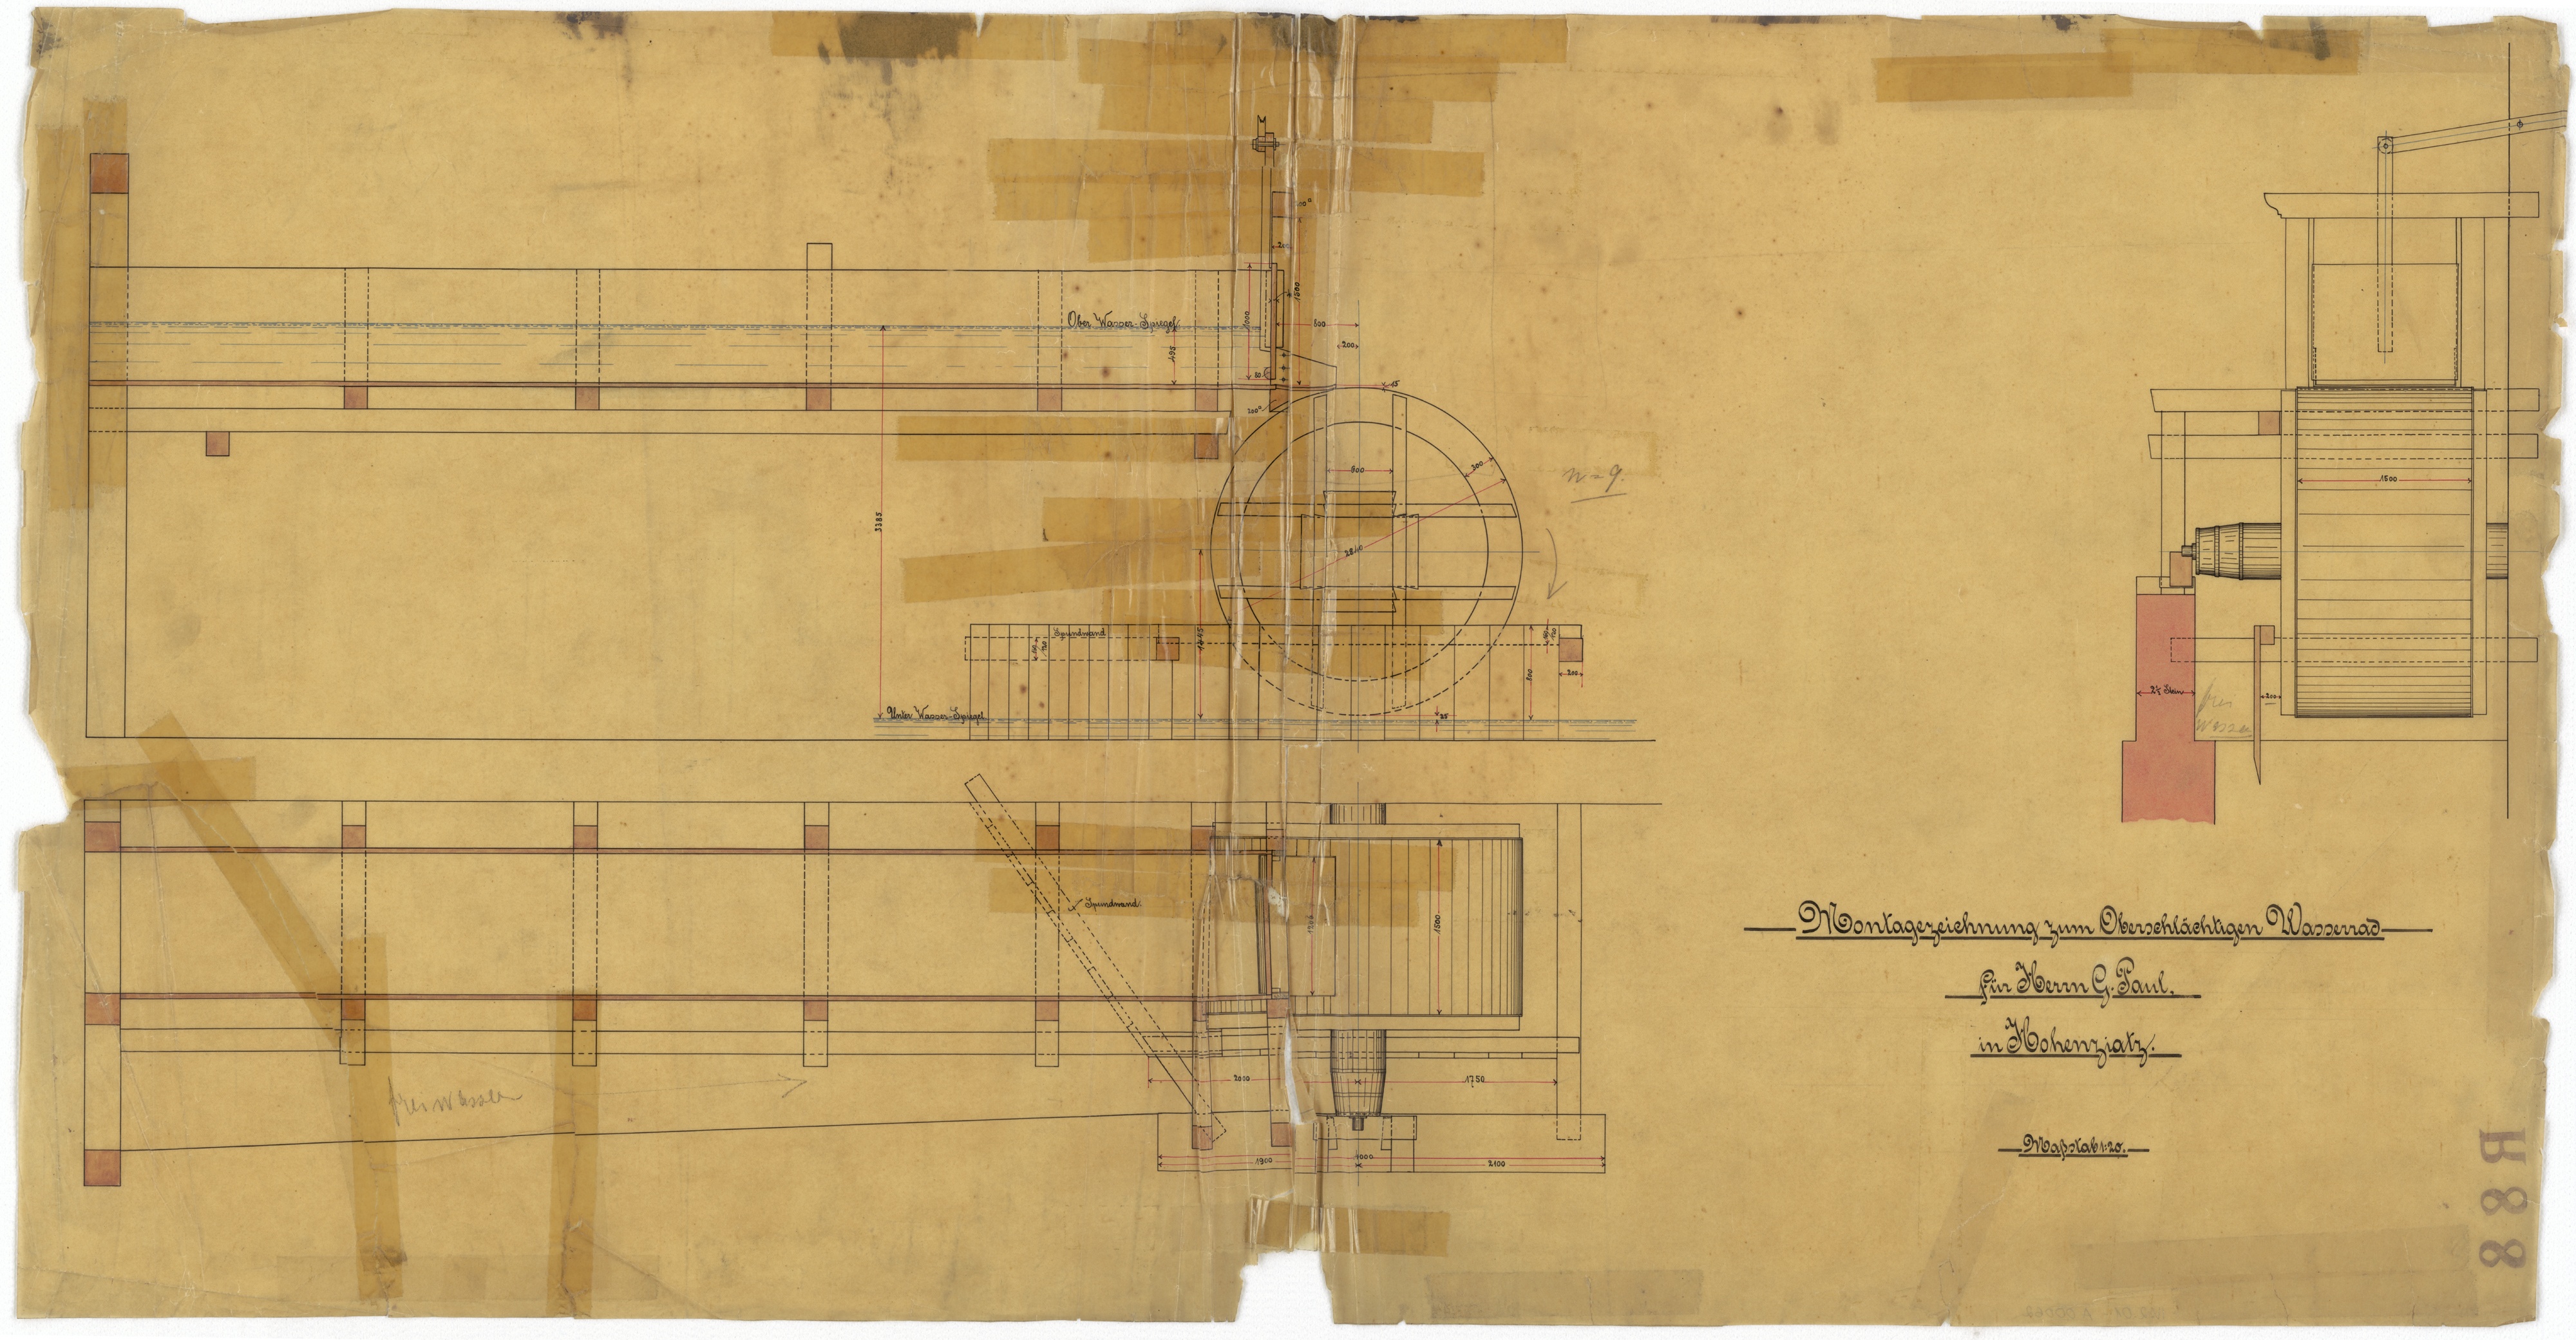 Technische Zeichnung : Montagezeichnung zum oberschlächtigen Wasserrad für Herrn G. Paul in Hohenziatz (Stiftung Deutsches Technikmuseum Berlin CC BY-SA)